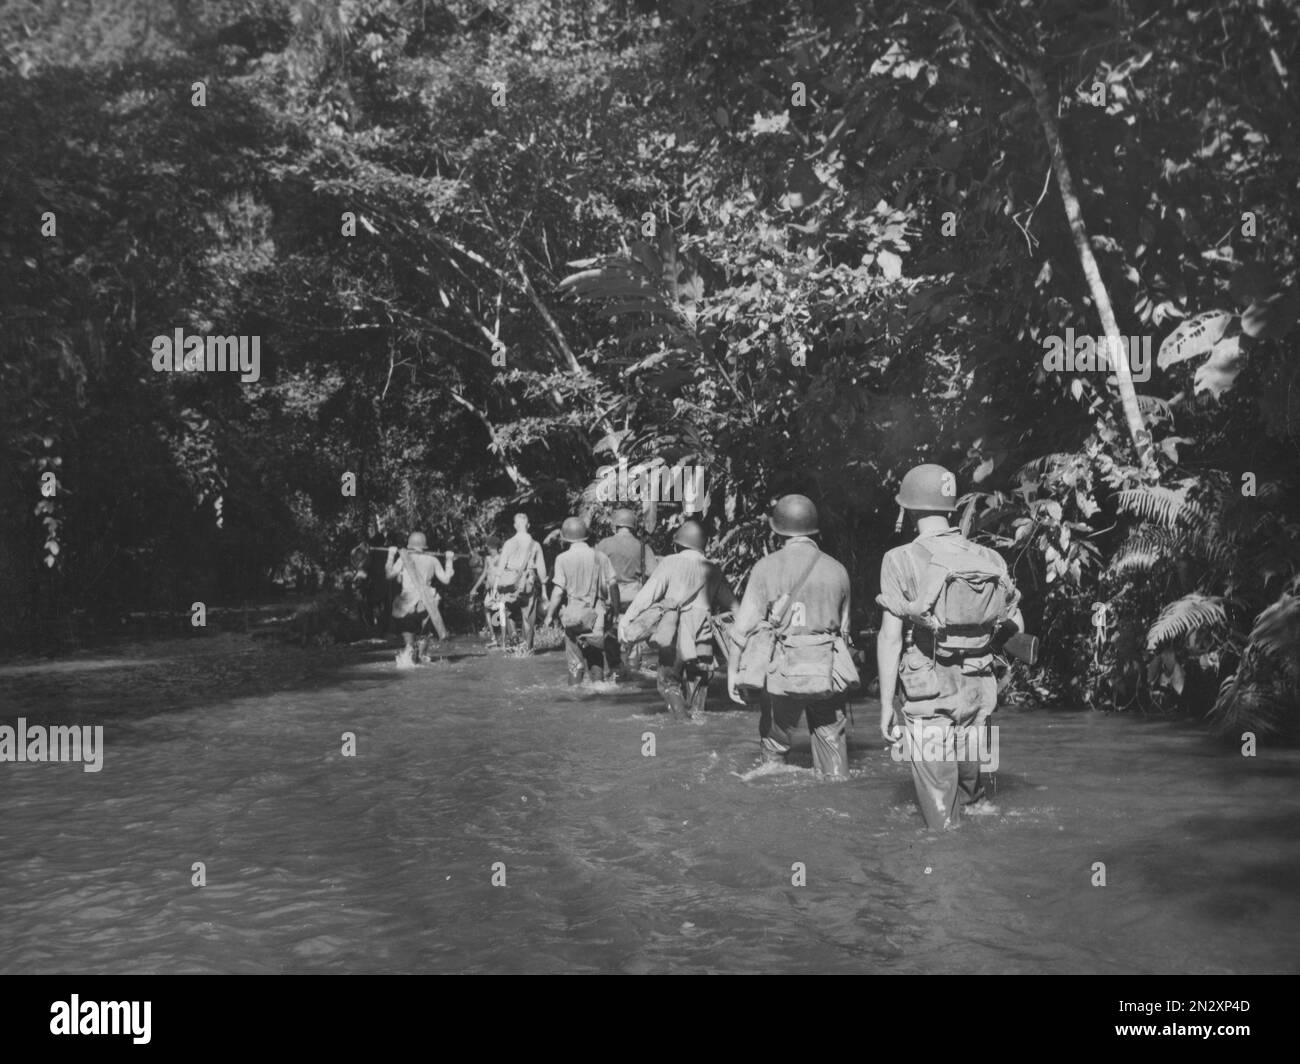 GUADALCANAL, ÎLES SALOMON - vers 1942-1943 - les Marines des États-Unis avancent à travers la jungle dense de la rivière Tenaru dans une mission de détruire deux Japonais 77mm Banque D'Images